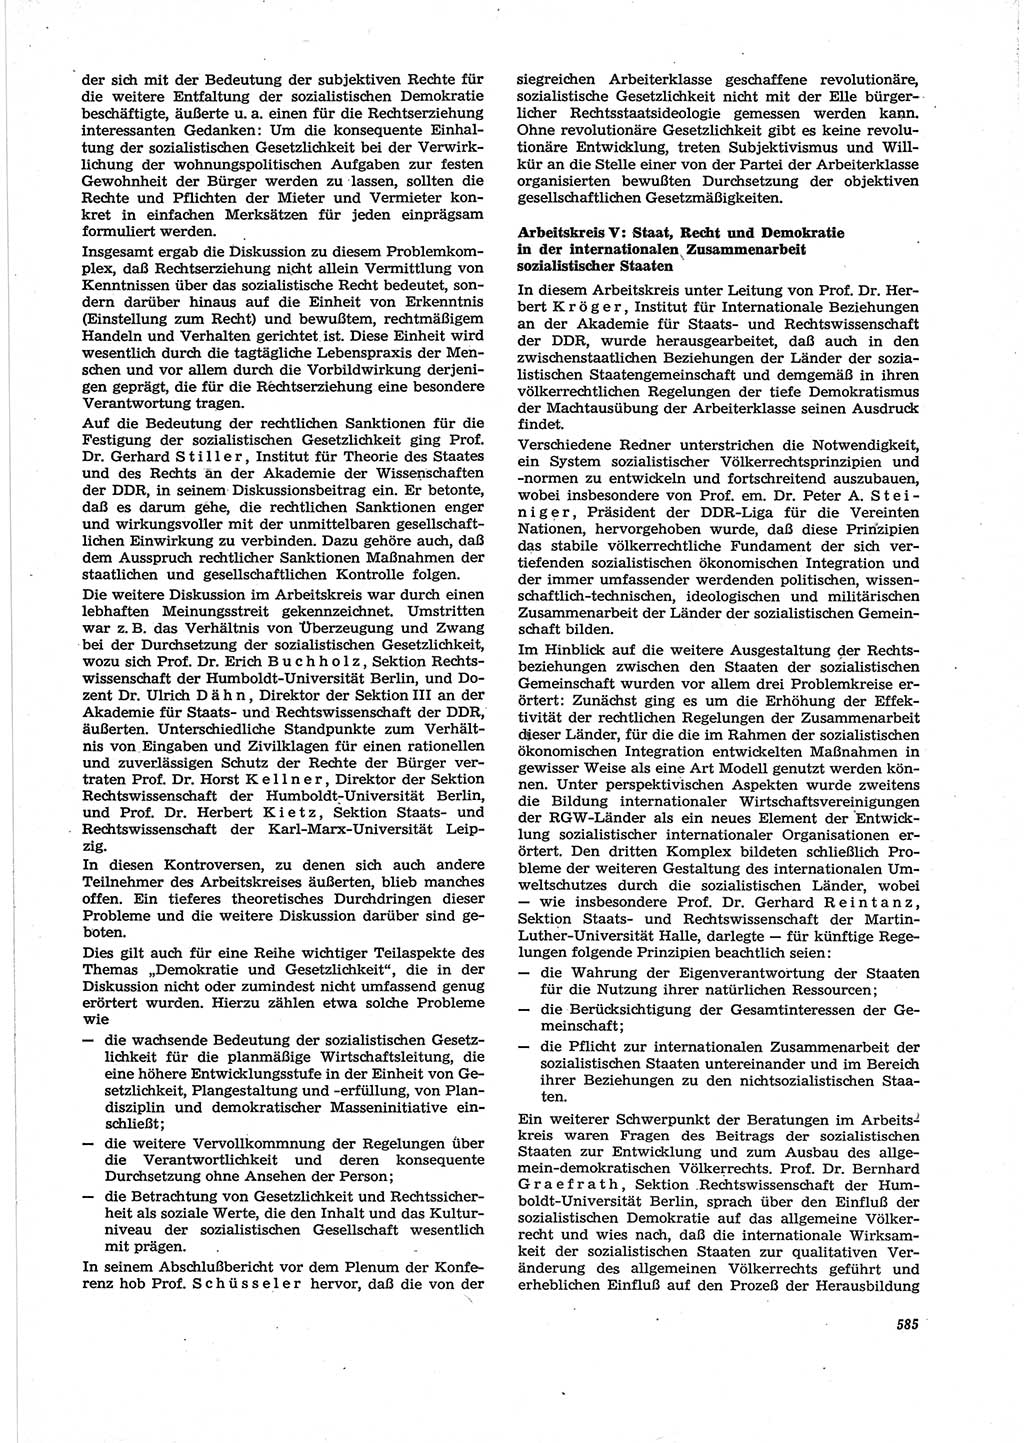 Neue Justiz (NJ), Zeitschrift für Recht und Rechtswissenschaft [Deutsche Demokratische Republik (DDR)], 28. Jahrgang 1974, Seite 585 (NJ DDR 1974, S. 585)